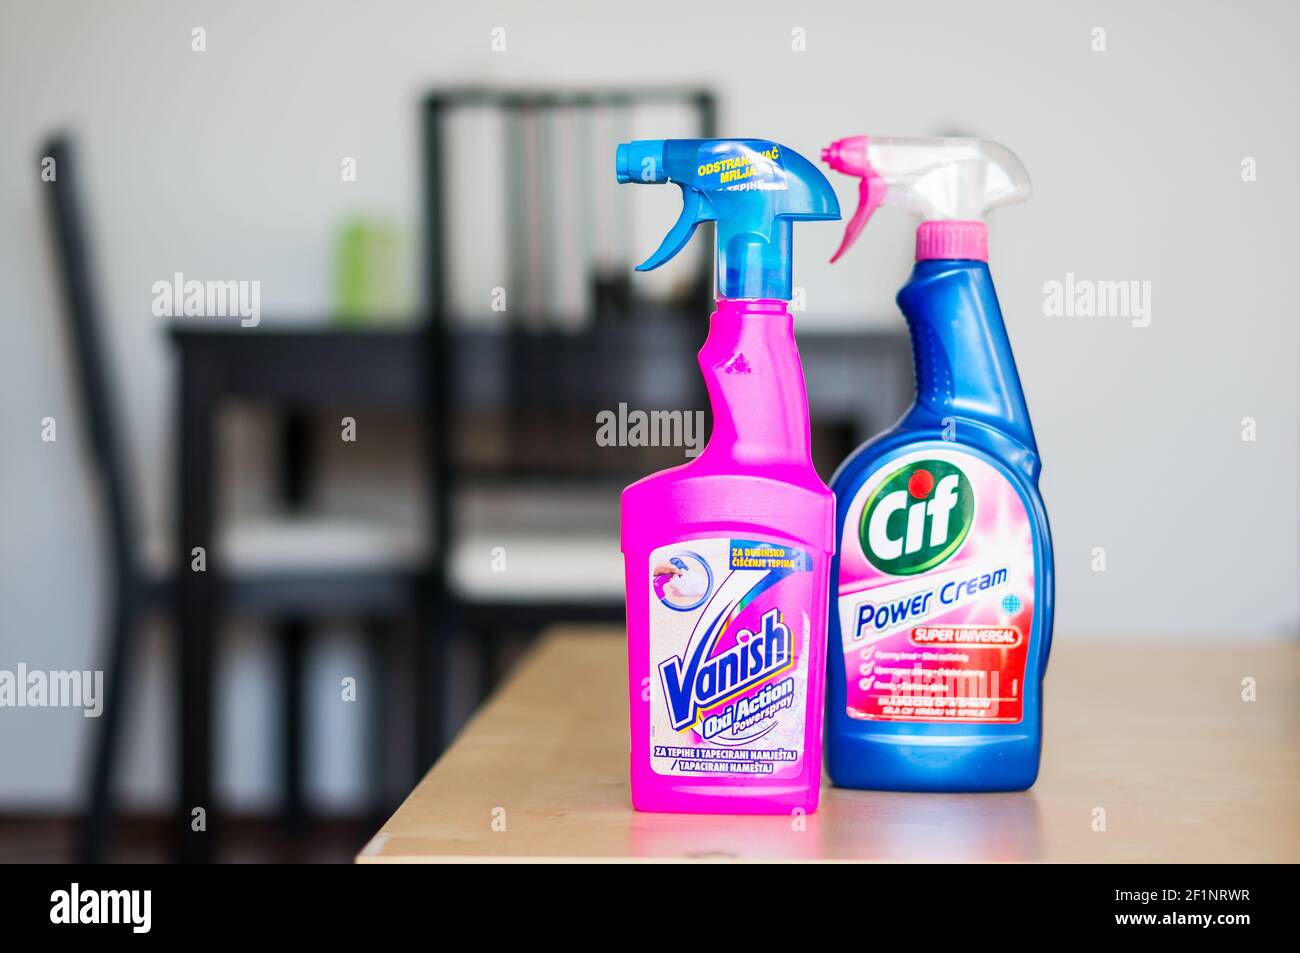 https://c8.alamy.com/comp/2F1NRWR/poznan-poland-mar-02-2014-multi-cleaning-spray-bottle-from-popular-brands-2F1NRWR.jpg